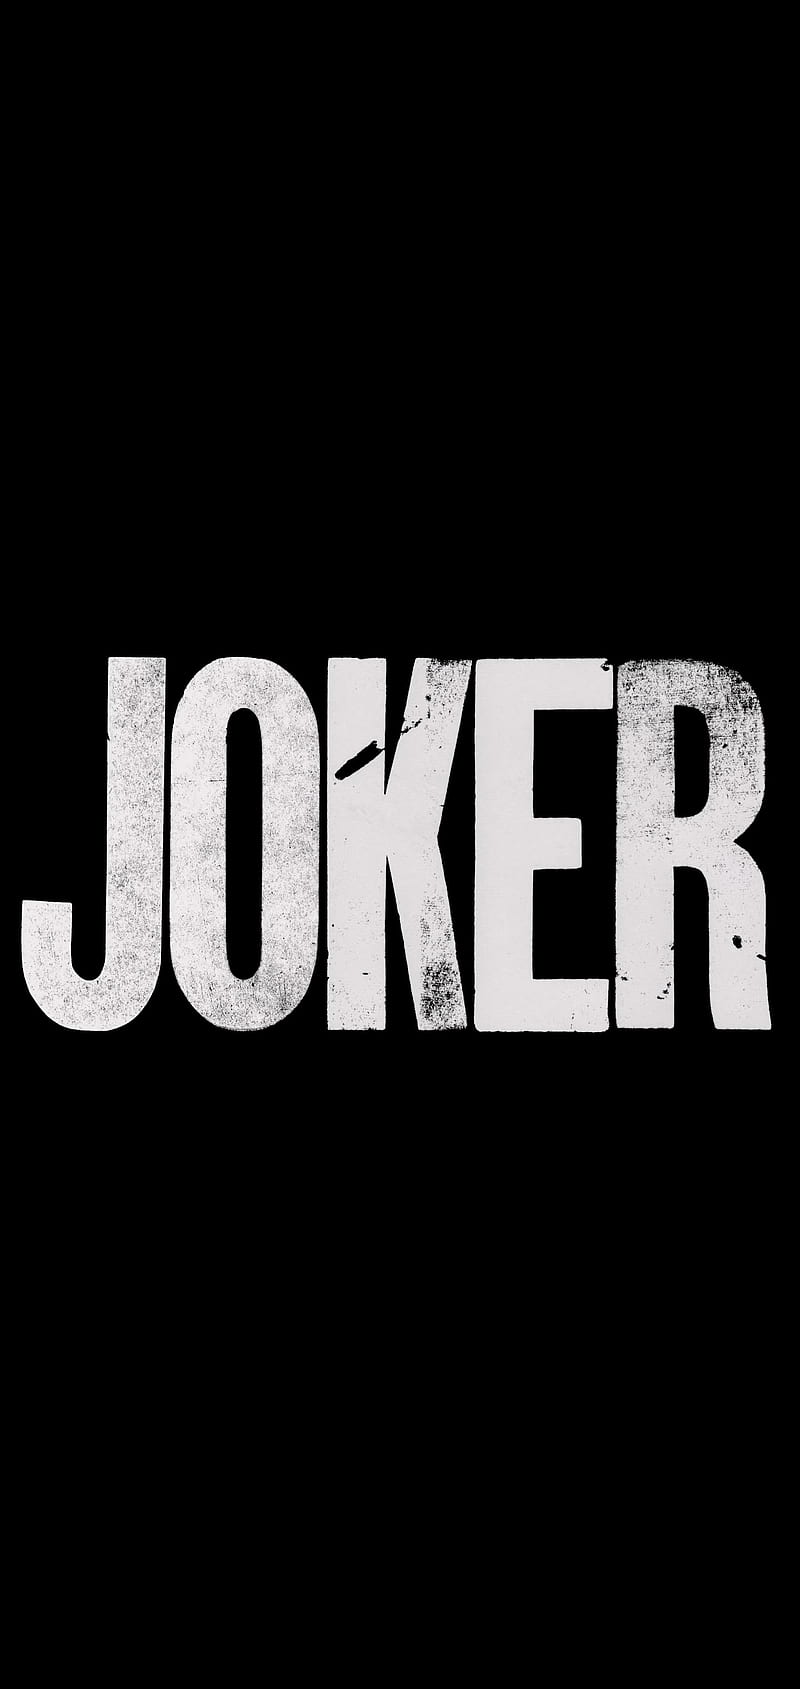 The Joker Poster Design